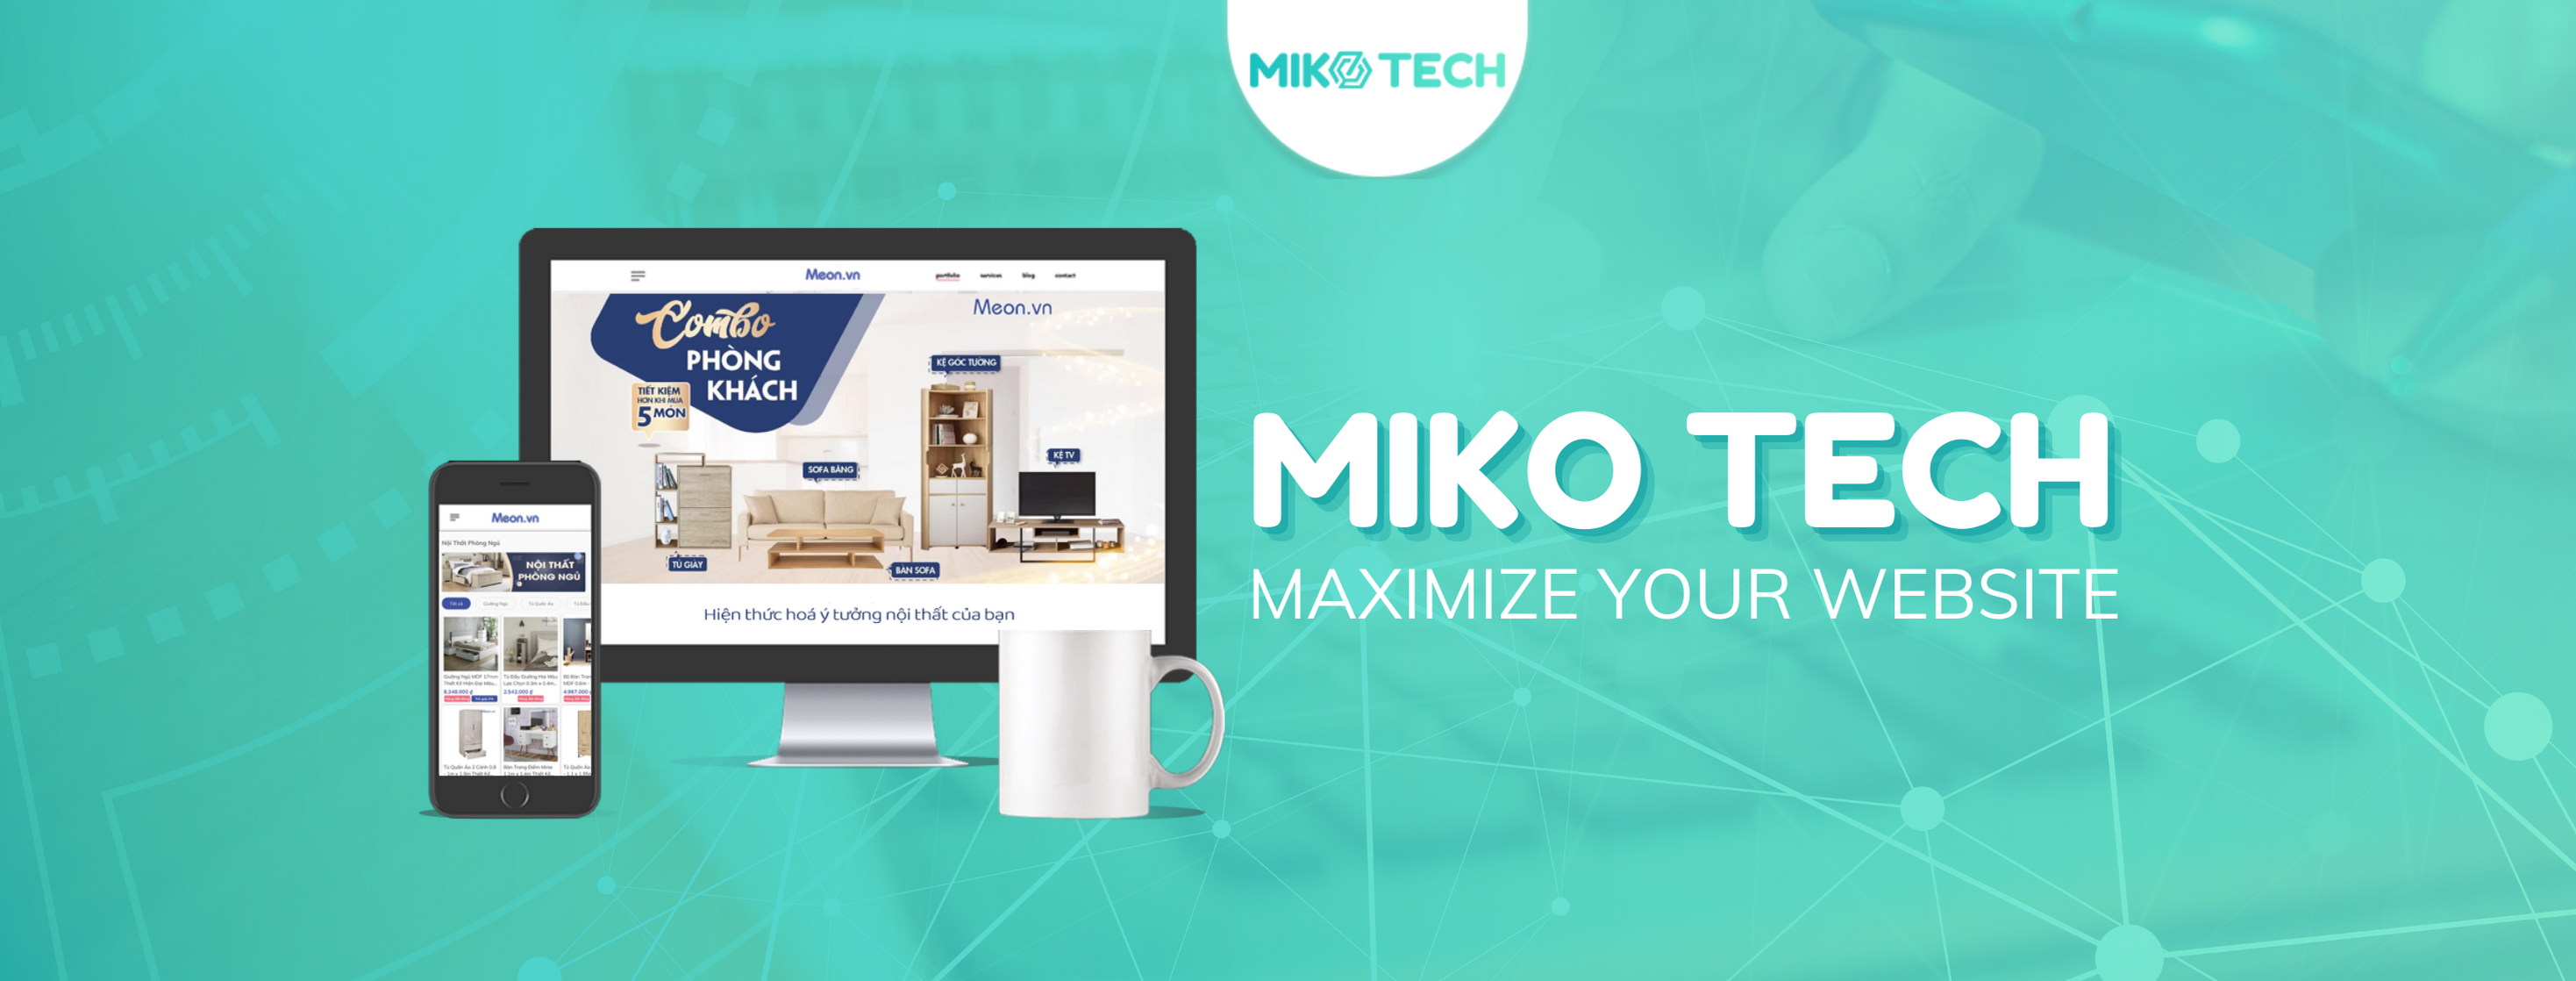 Dịch vụ Digital Marketing Tổng Thể Doanh Nghiệp | Miko Tech Agency